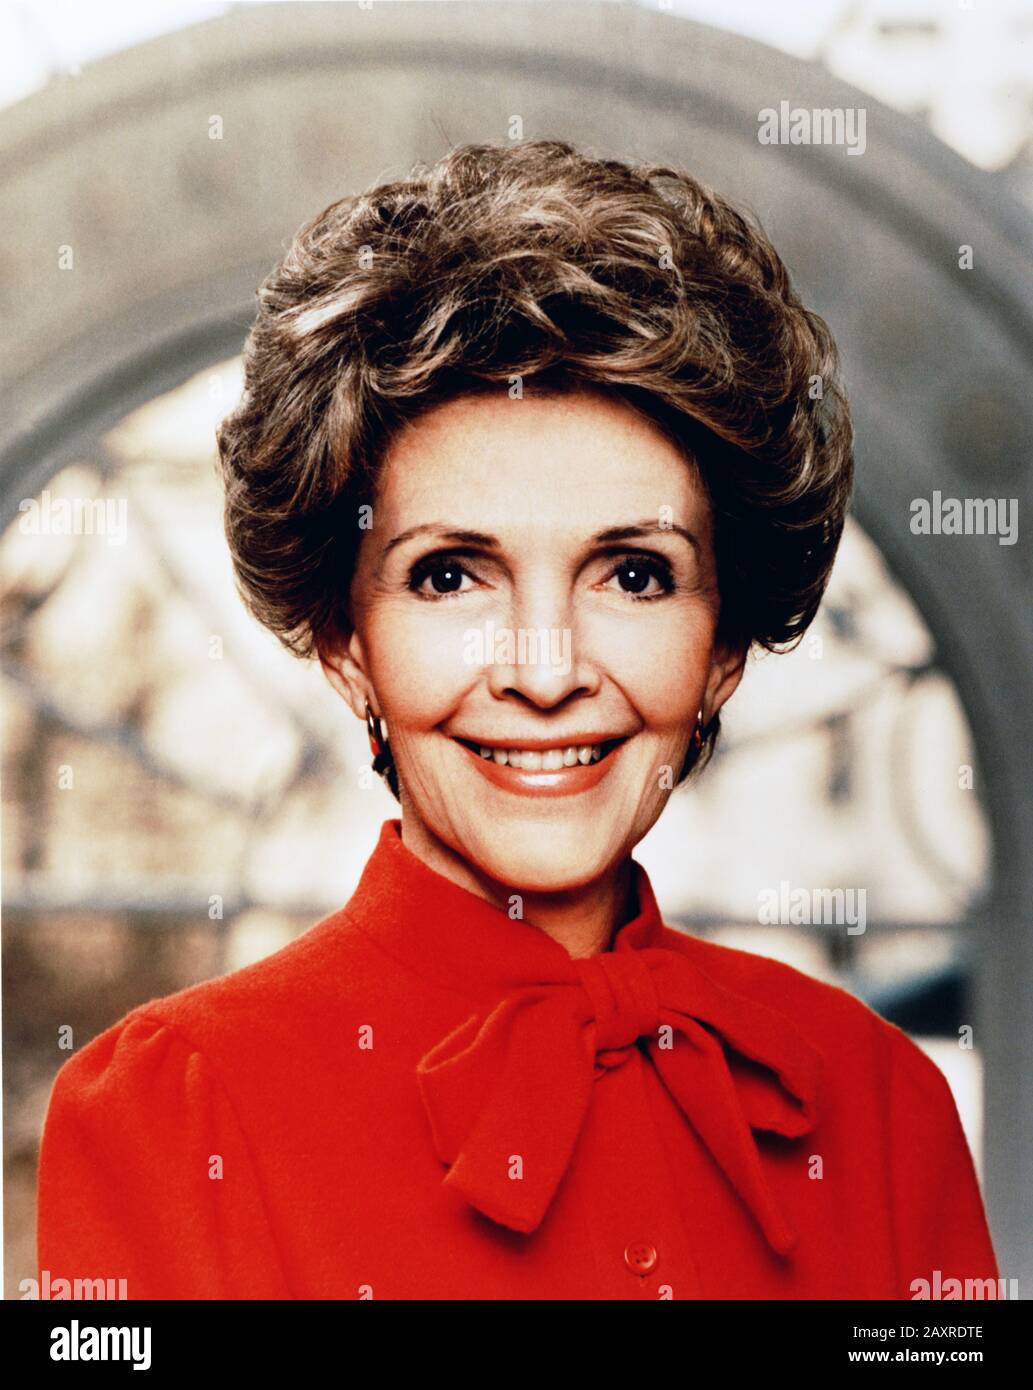 1981 , WASHINGTON D.C. , États-Unis : l'ex-actrice et première dame NANCY REAGAN ( Nancy Davis , 1921 - 2016 ). Photo du photographe officiel de la Maison Blanche . Marié au 40ème président américain RONALD REAGAN ( 1911 - 2004 ) en charge de 1981 à 1989 . Dans cette photo juste après la Parade Inaugural à Washington, D.C. le jour de l'Inauguration, 1981 . - première Dame des Etats-Unis - POLISO - POLITICIEN - POLITICA - POLITIQUE - USA - ritratto - portrait - abito vestito rosso - robe rouge - PRESIDENTE DELLA REPUBBLICA DEGLI STATI UNITI d'AMÉRIQUE --- Archivio GBB Banque D'Images